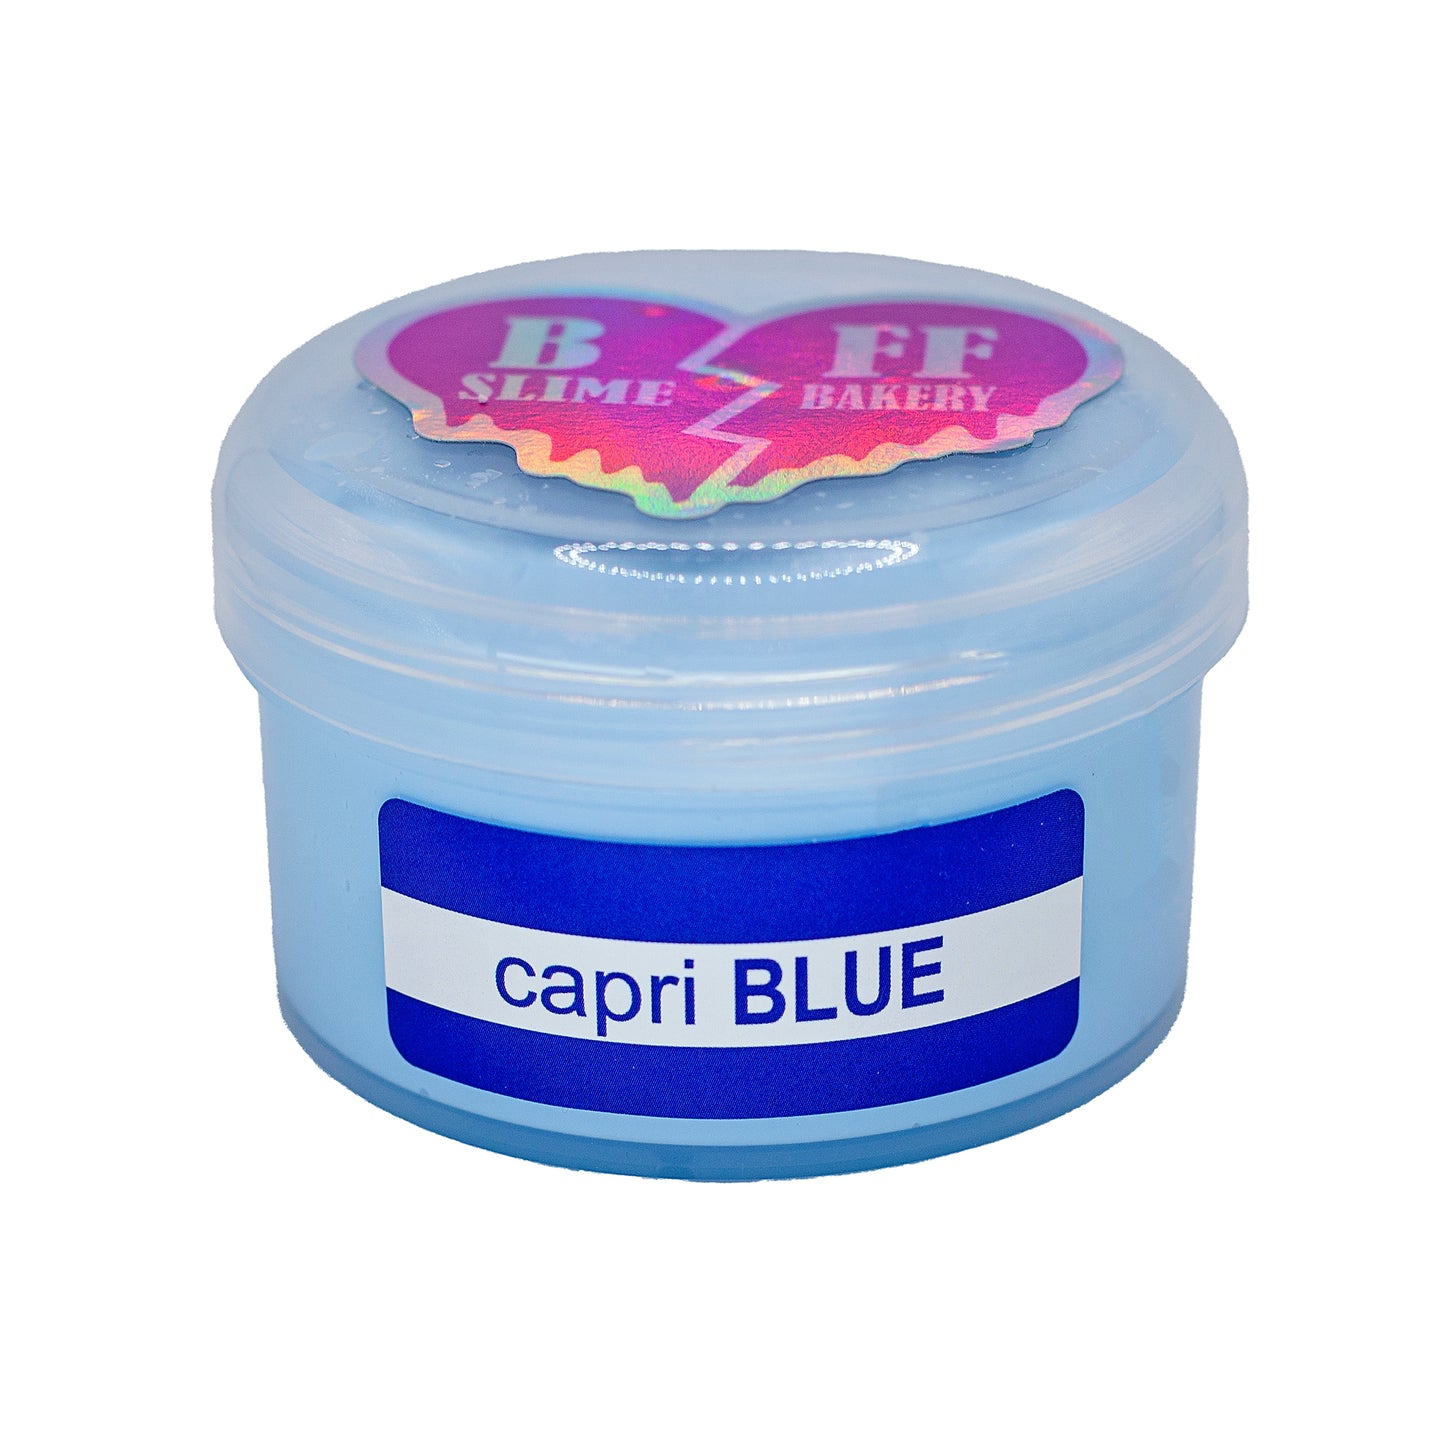 Capri blue